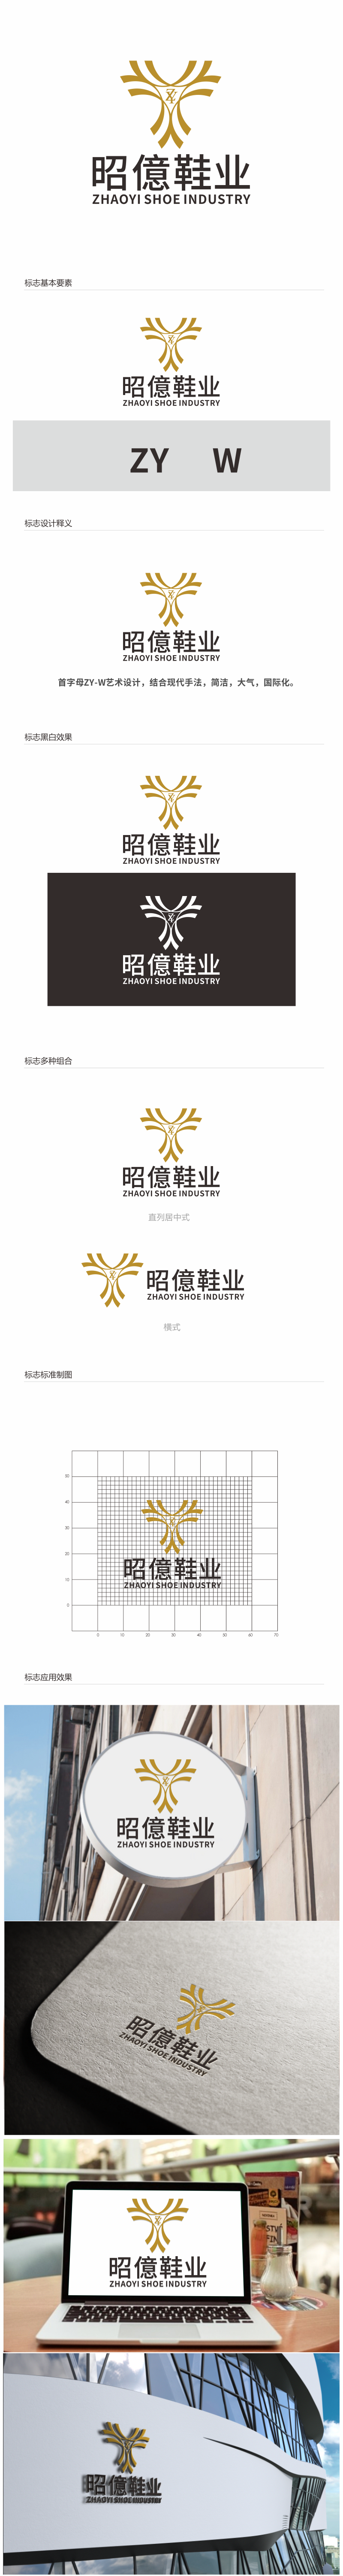 汤儒娟的昭億鞋业logo设计